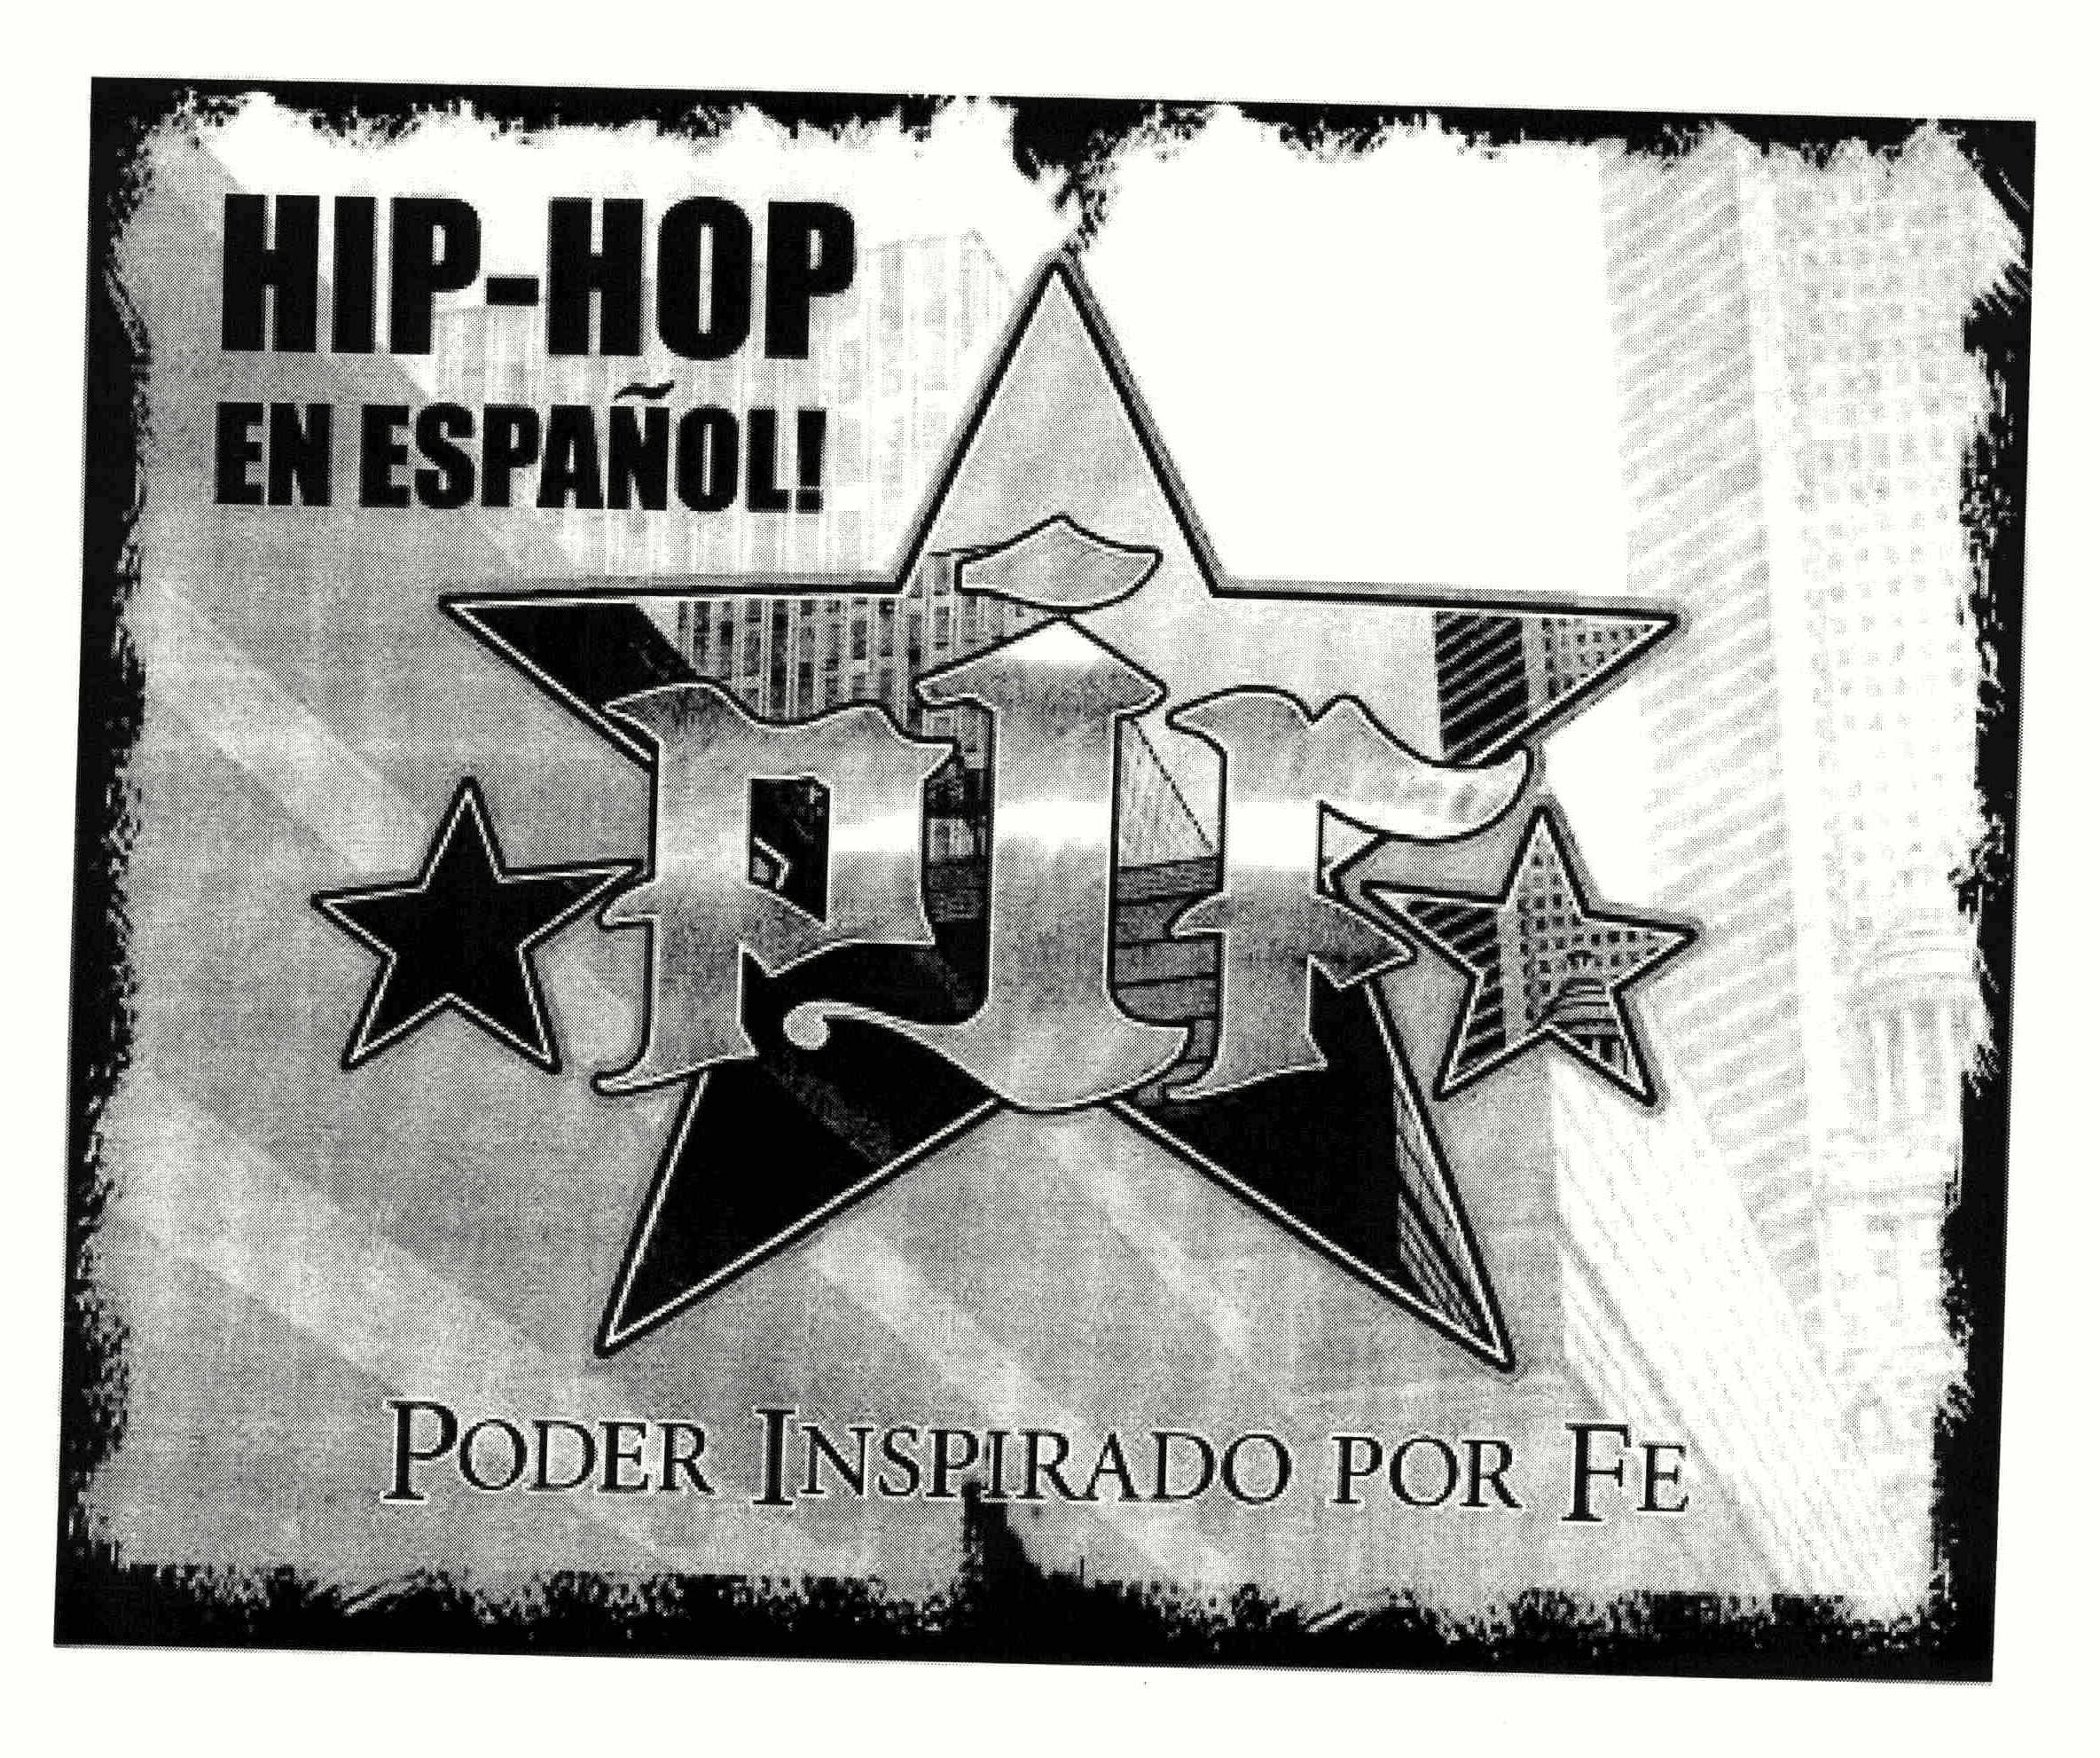  HIP-HOP EN ESPAÃOL! PIF PODER INSPIRADO POR FE